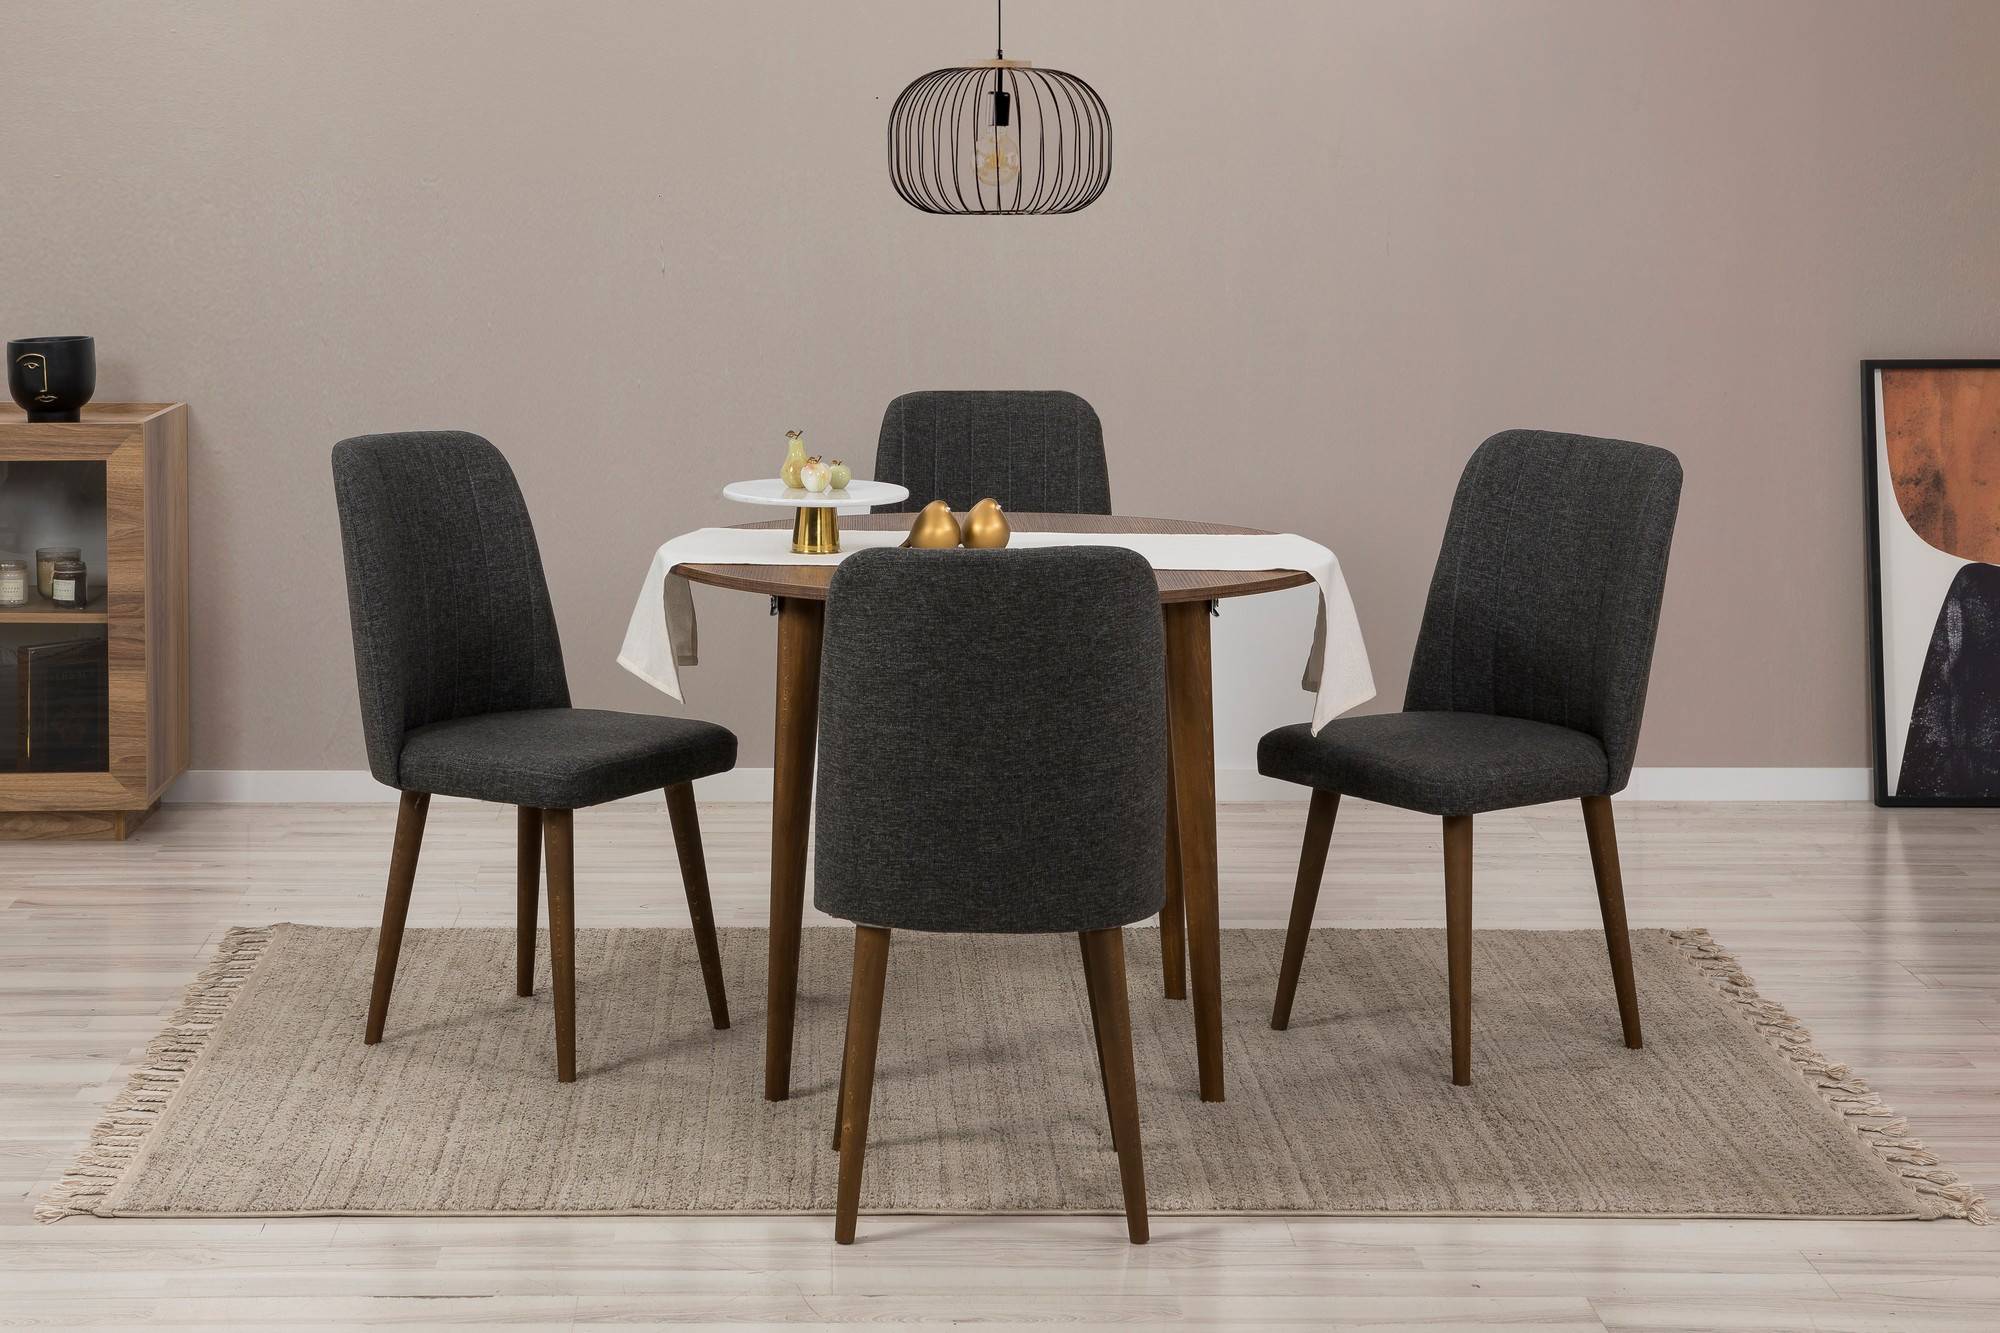 Conjunto de mesa redonda extensible y 4 sillas Malva de madera oscura y tela antracita.